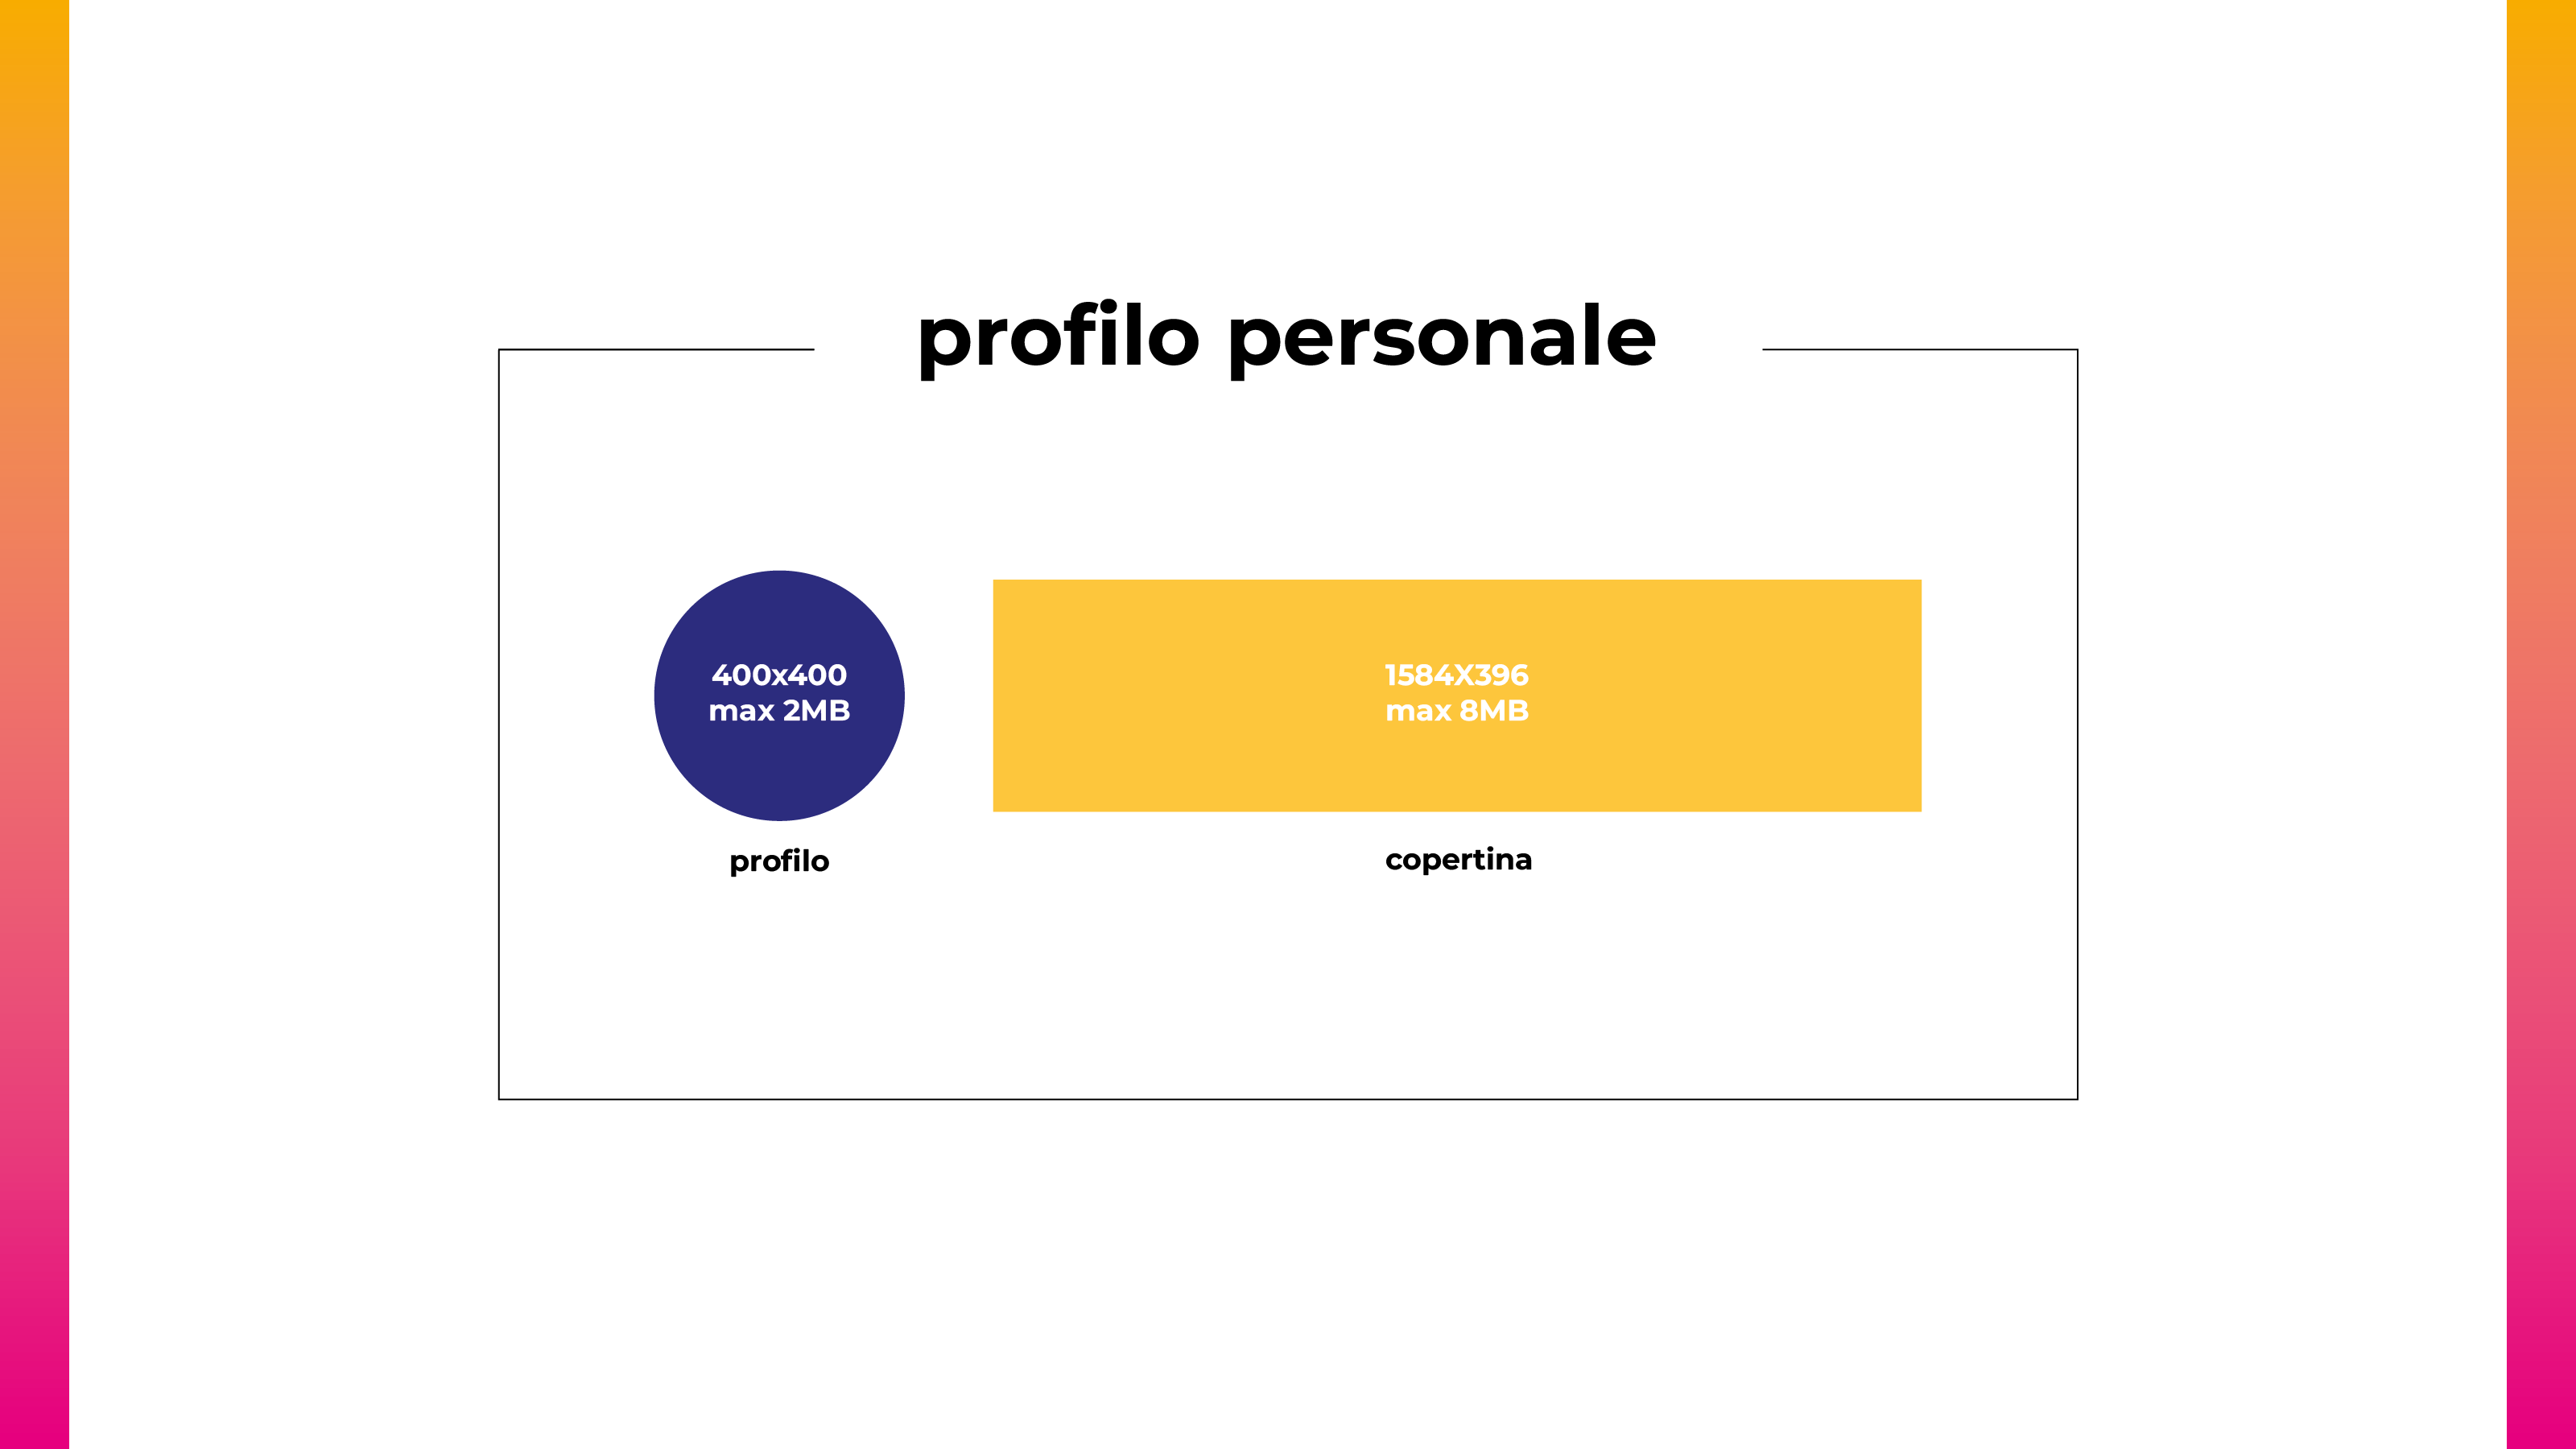 dimensioni-immagini-linkedin-profilo-personale